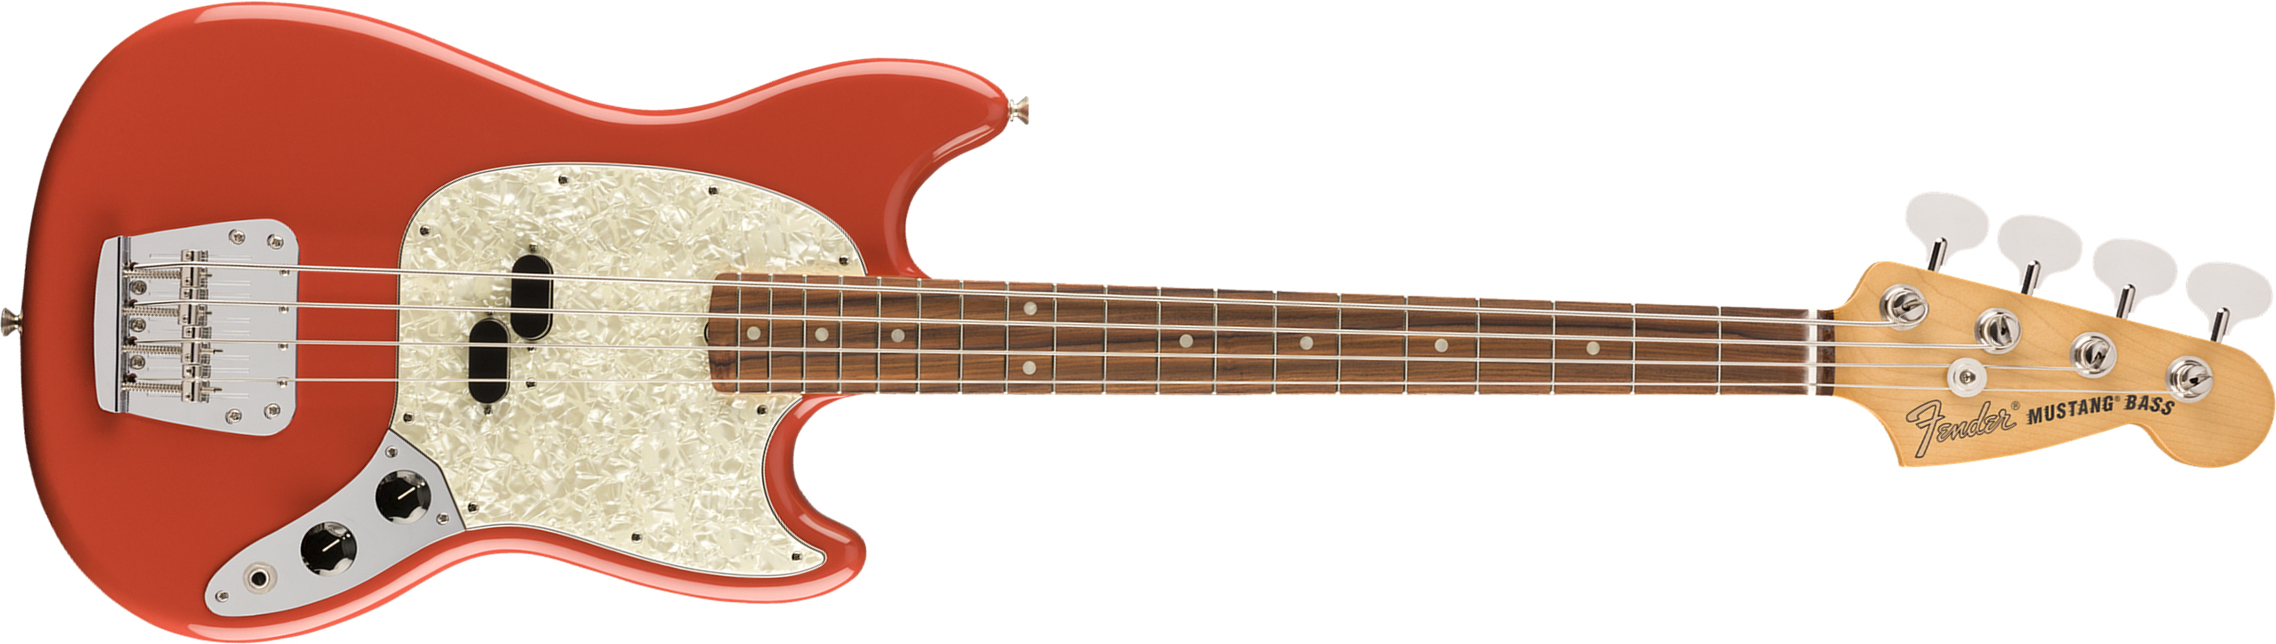 Fender Mustang Bass 60s Vintera Vintage Mex Pf - Fiesta Red - Bajo eléctrico para niños - Main picture